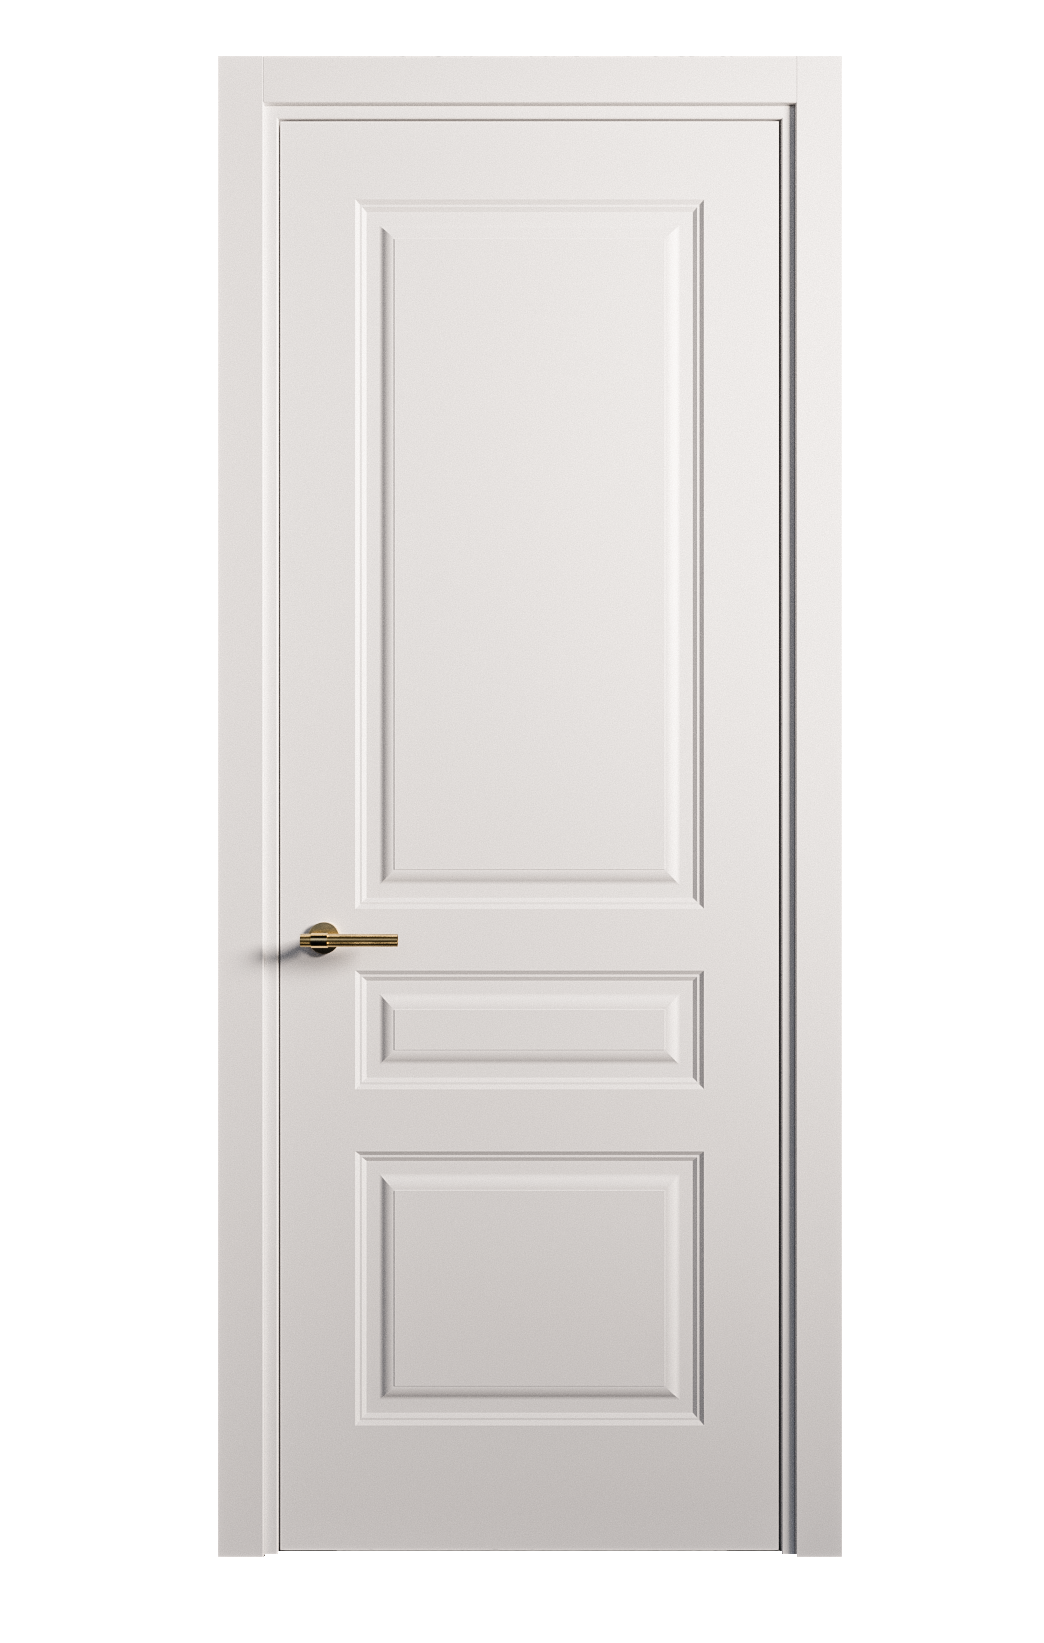 Межкомнатная дверь Вита-2 глухая эмаль ral 9003 26383